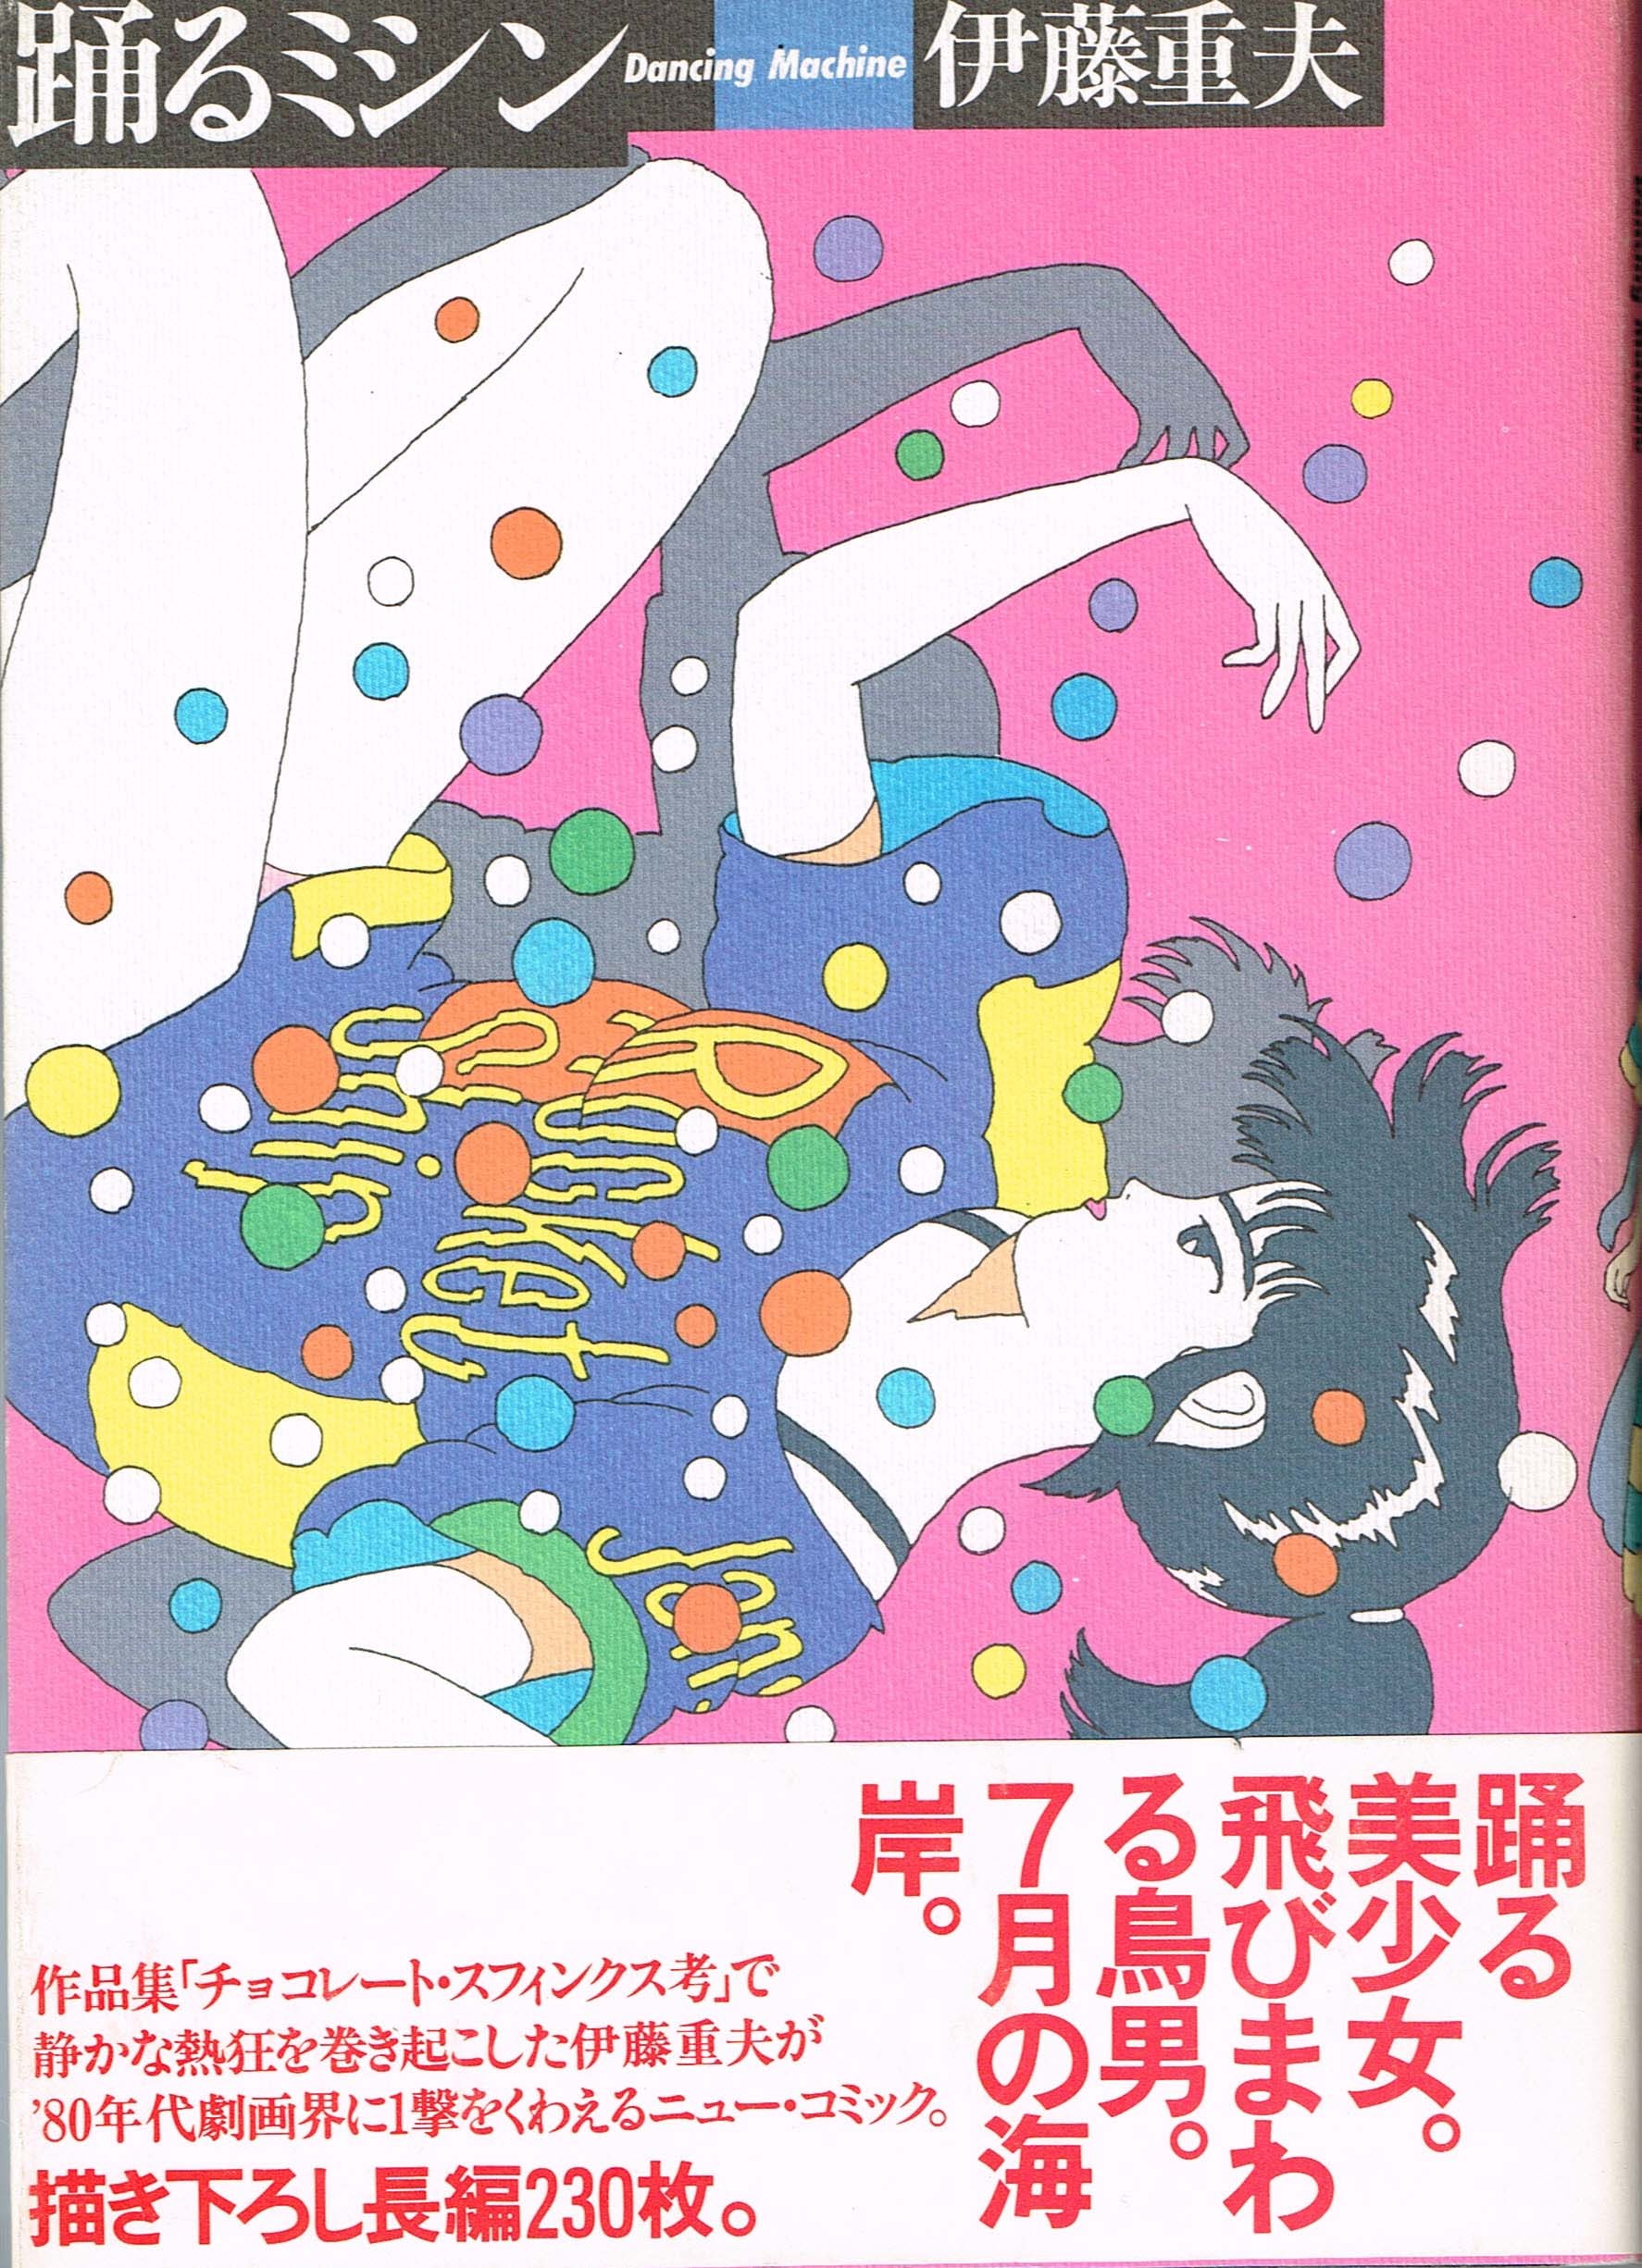 伊藤重夫 踊るミシン＆ダイヤモンド·因数猫分解 復刻版２冊セット-